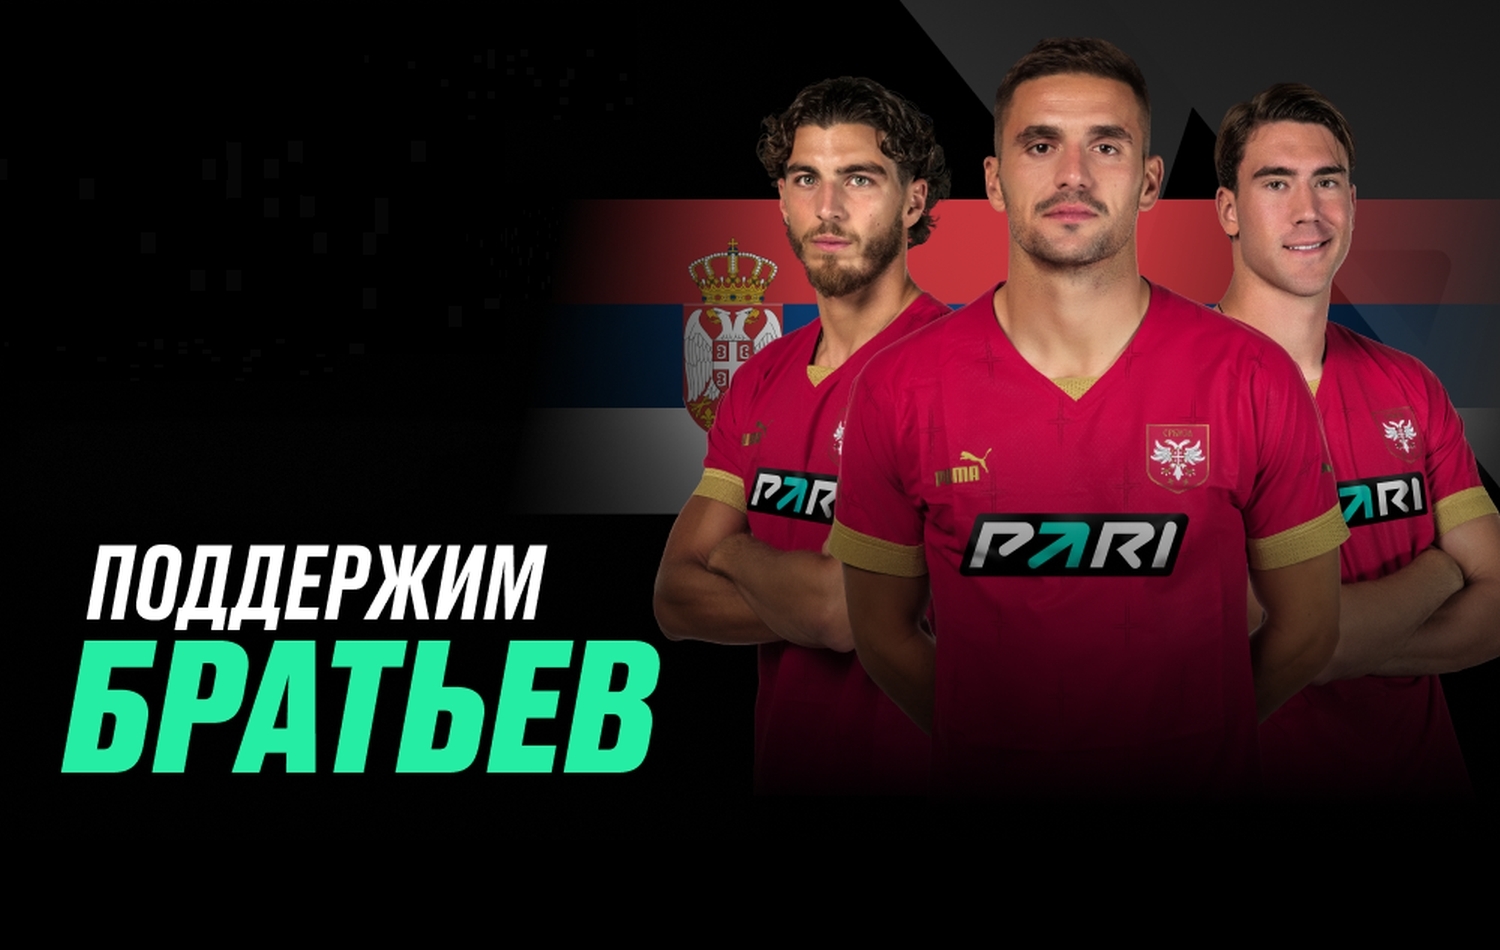 Российская компания стала спонсором сборной Сербии по футболу